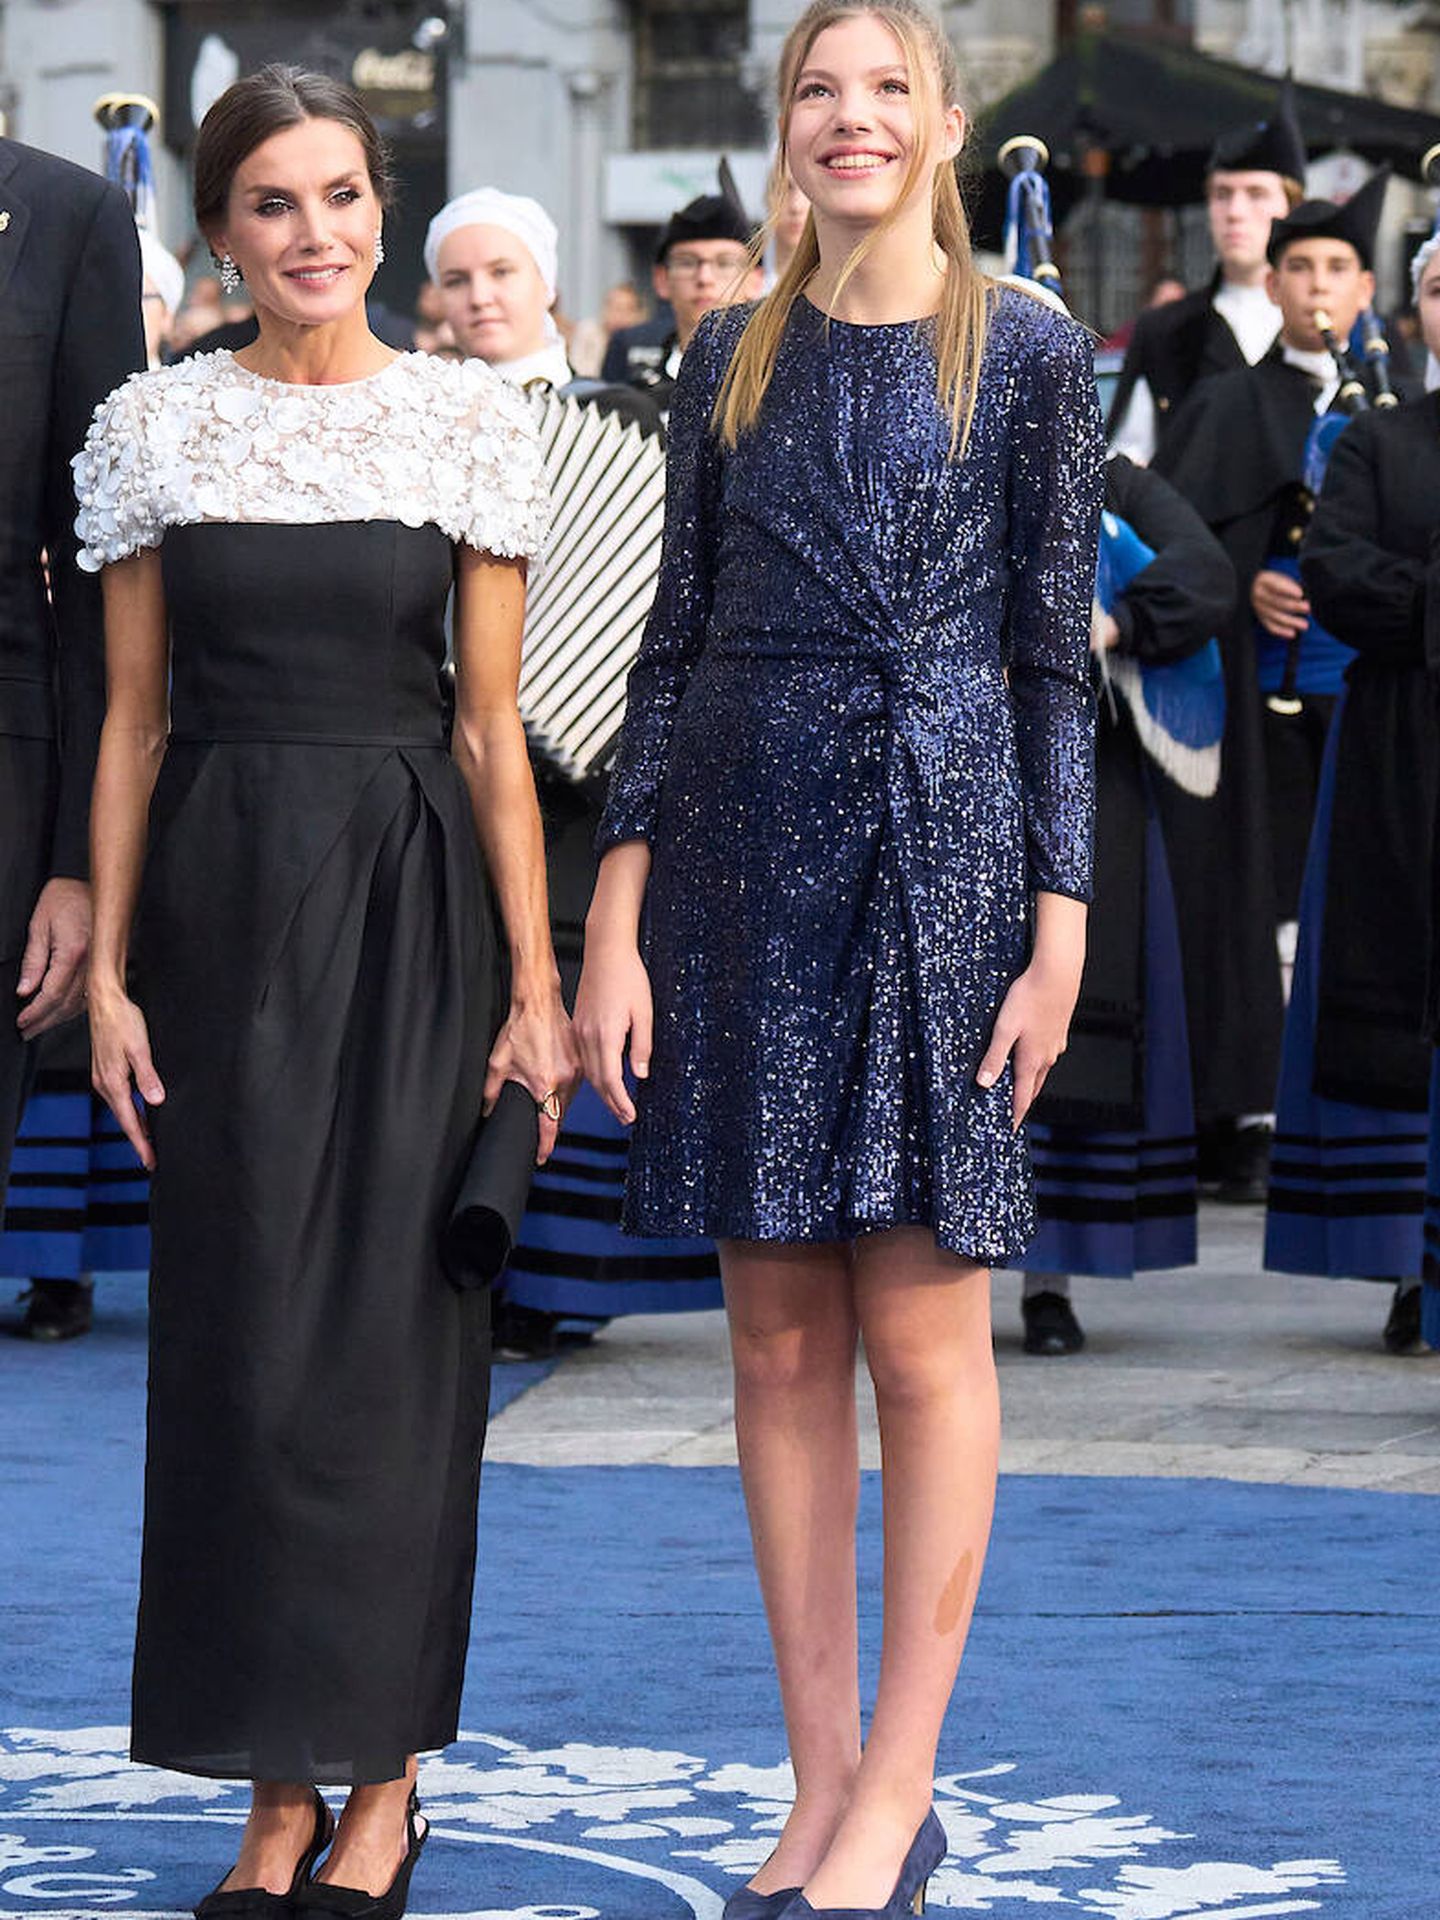 La reina Letizia, con vestido en blanco y negro en los Premios Princesa de Asturias. (LP)